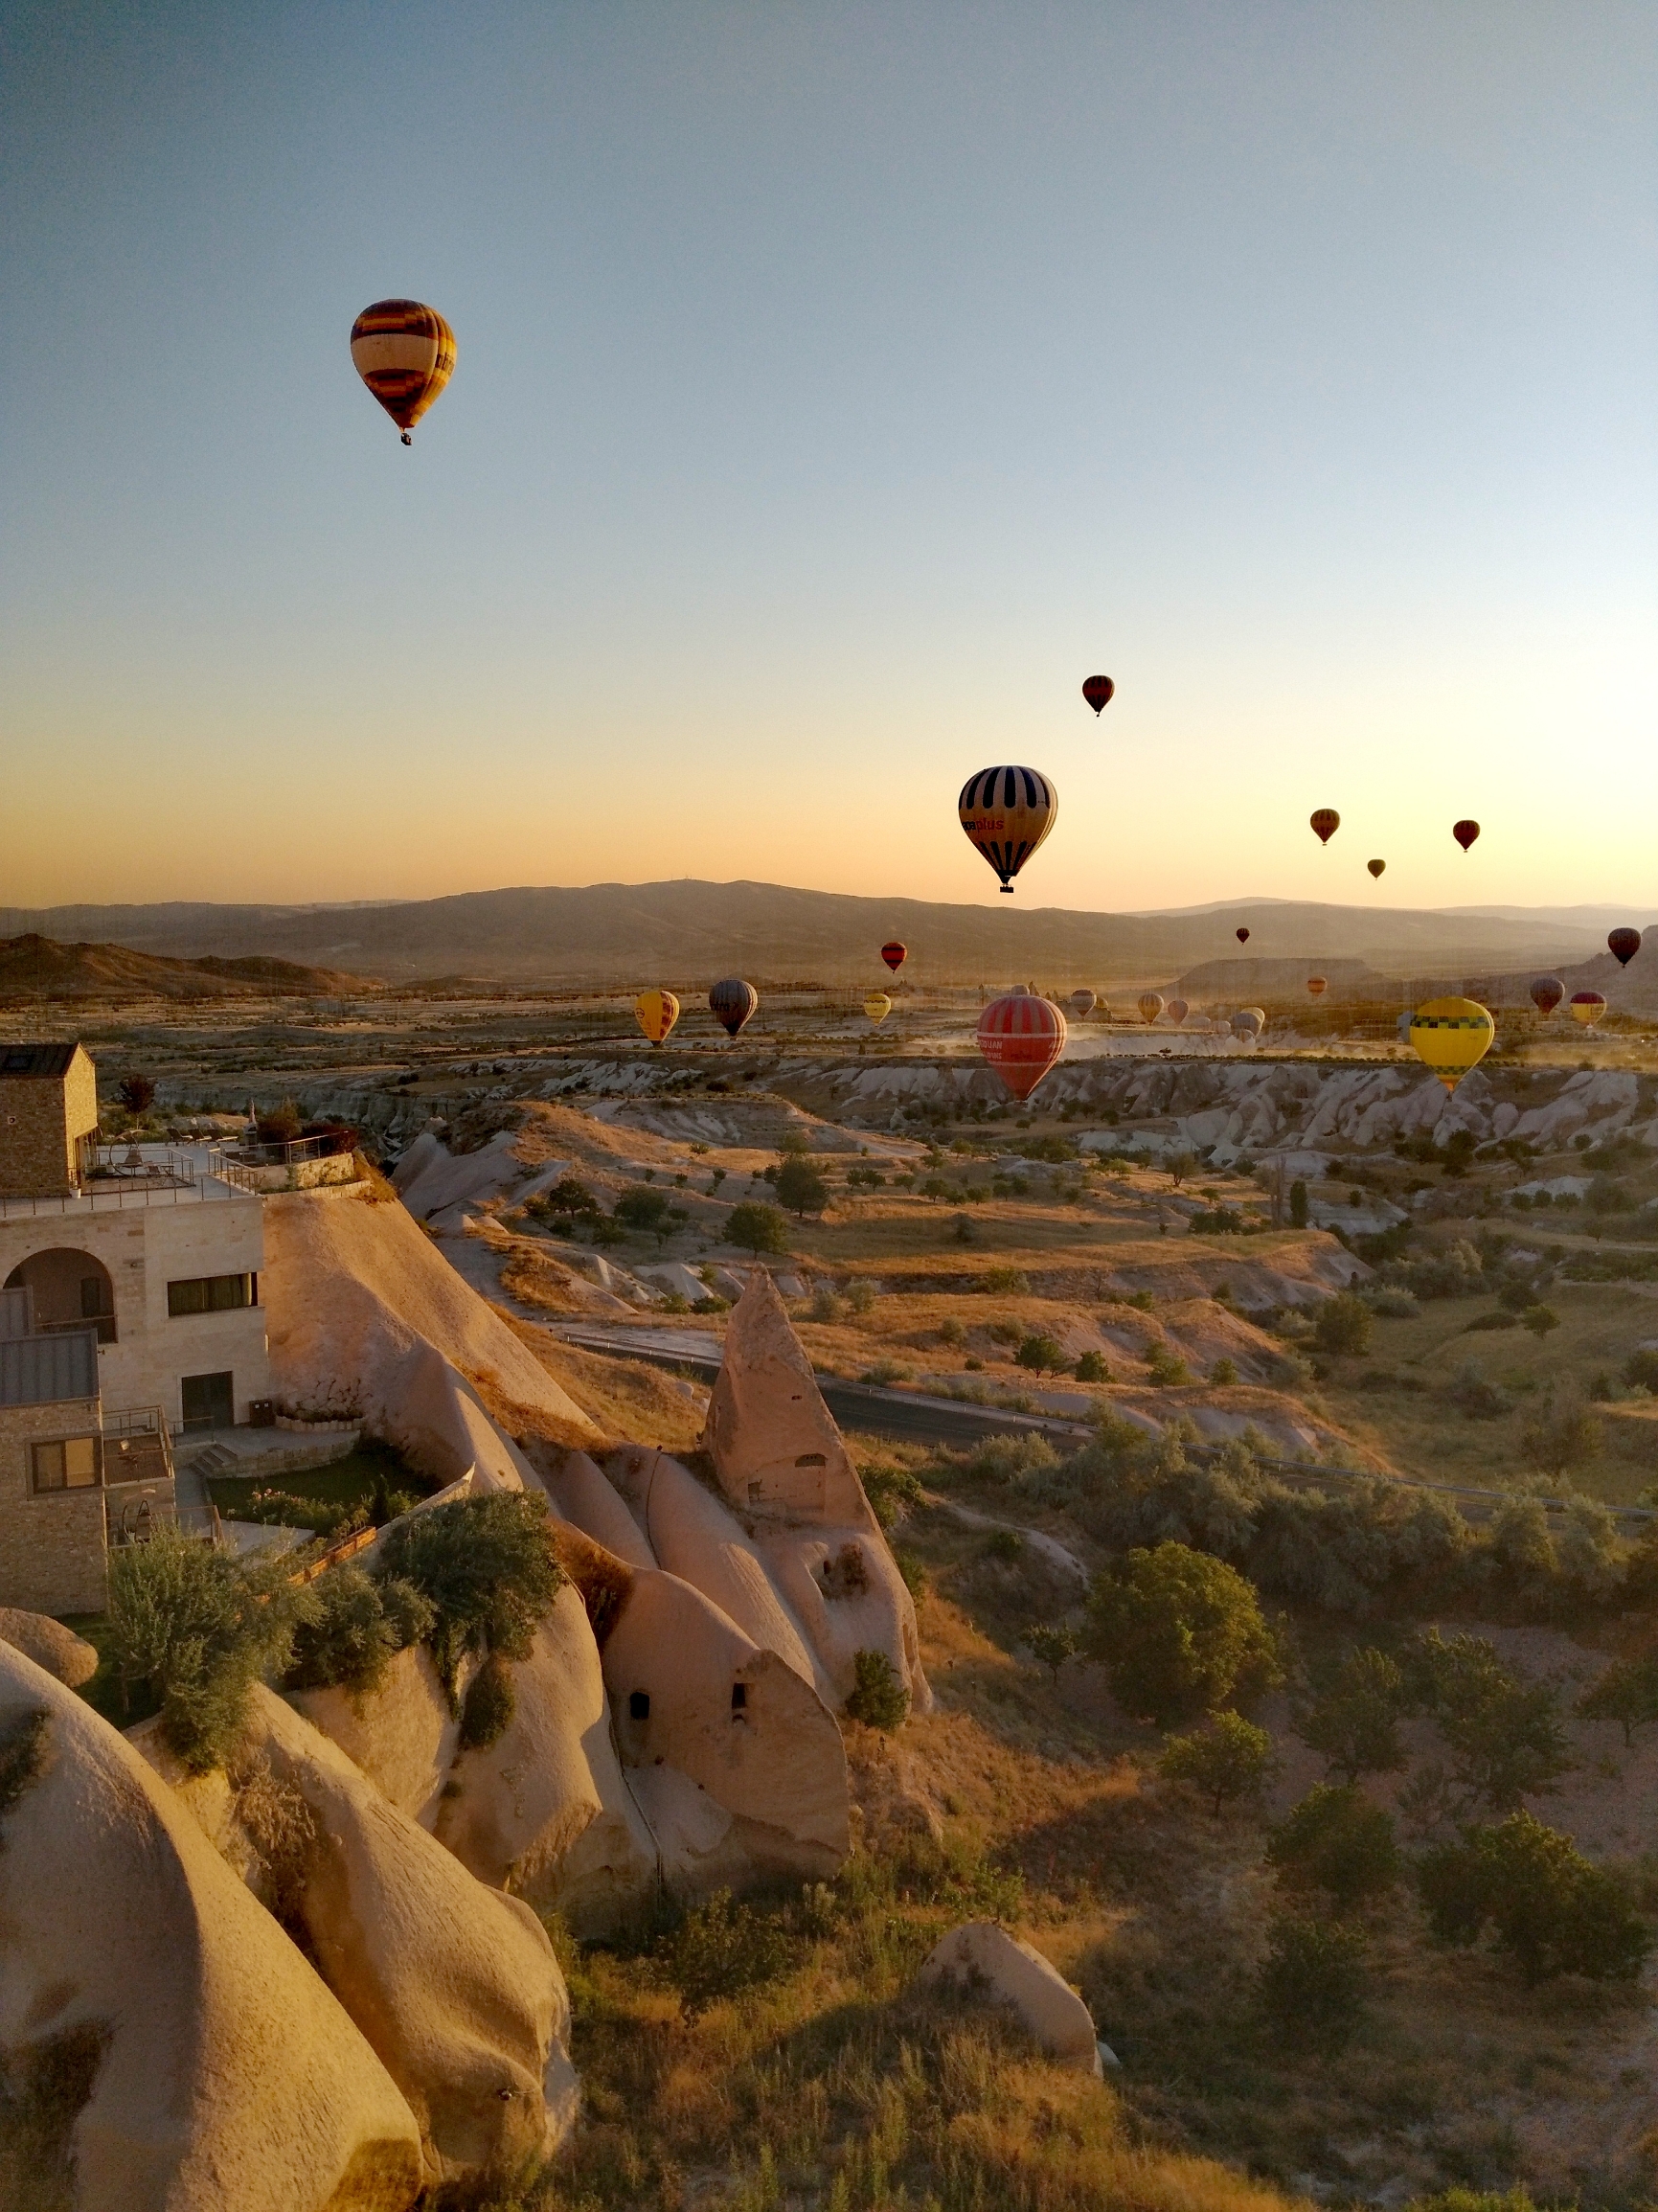 土耳其 | 博物馆酒店 | 在洞穴酒店欣赏梦幻般的热气球美景